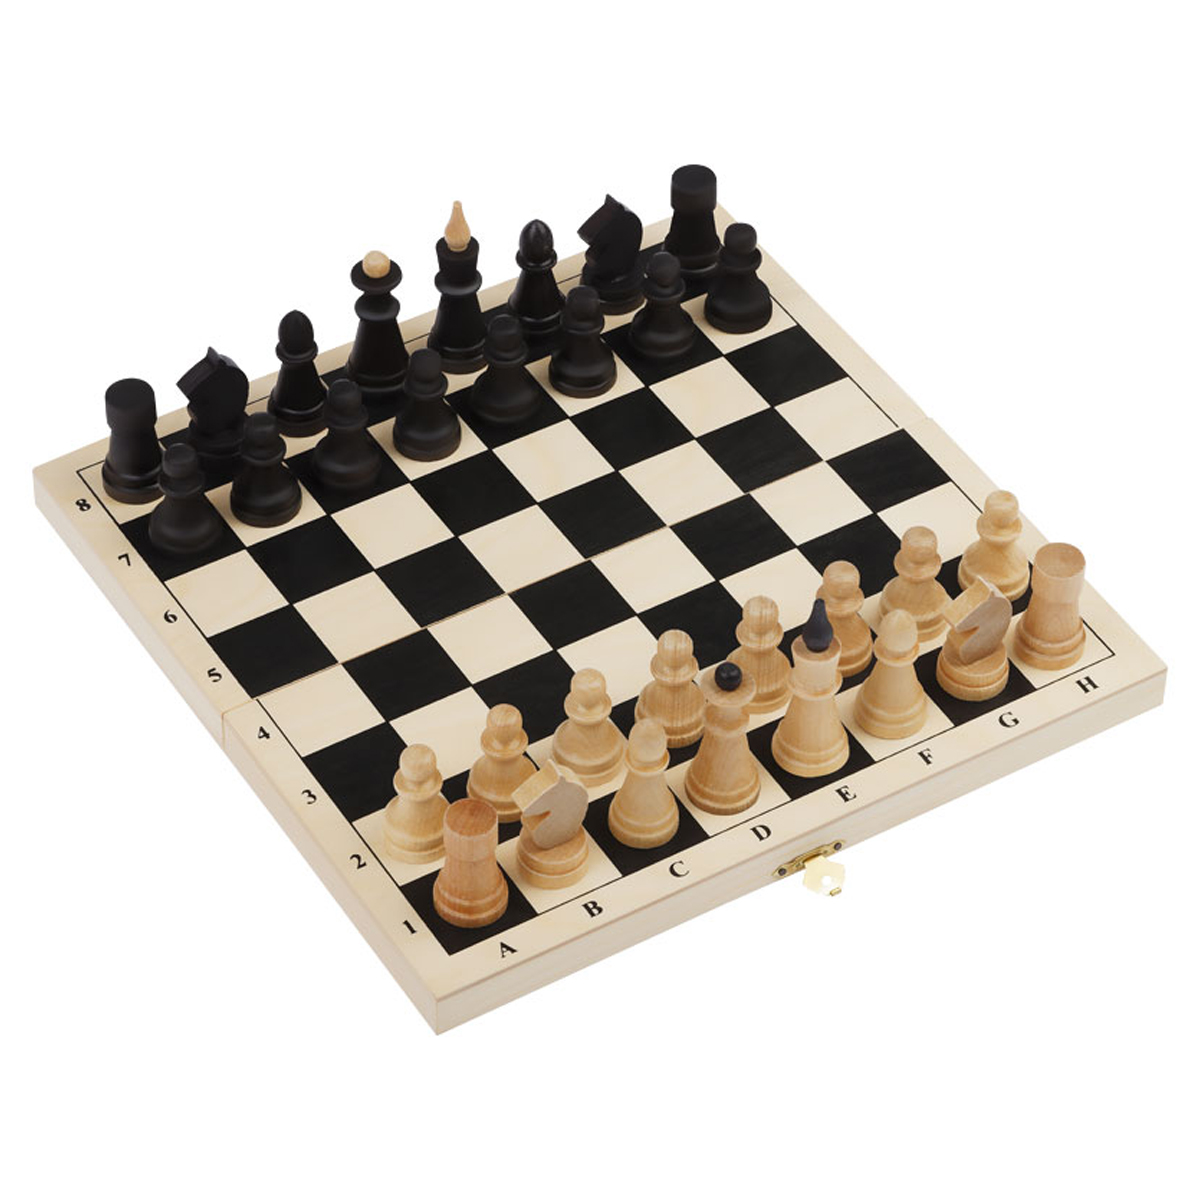 Шахматы ТРИ СОВЫ обиходные деревянные с деревянной доской 29*29см - фото 1